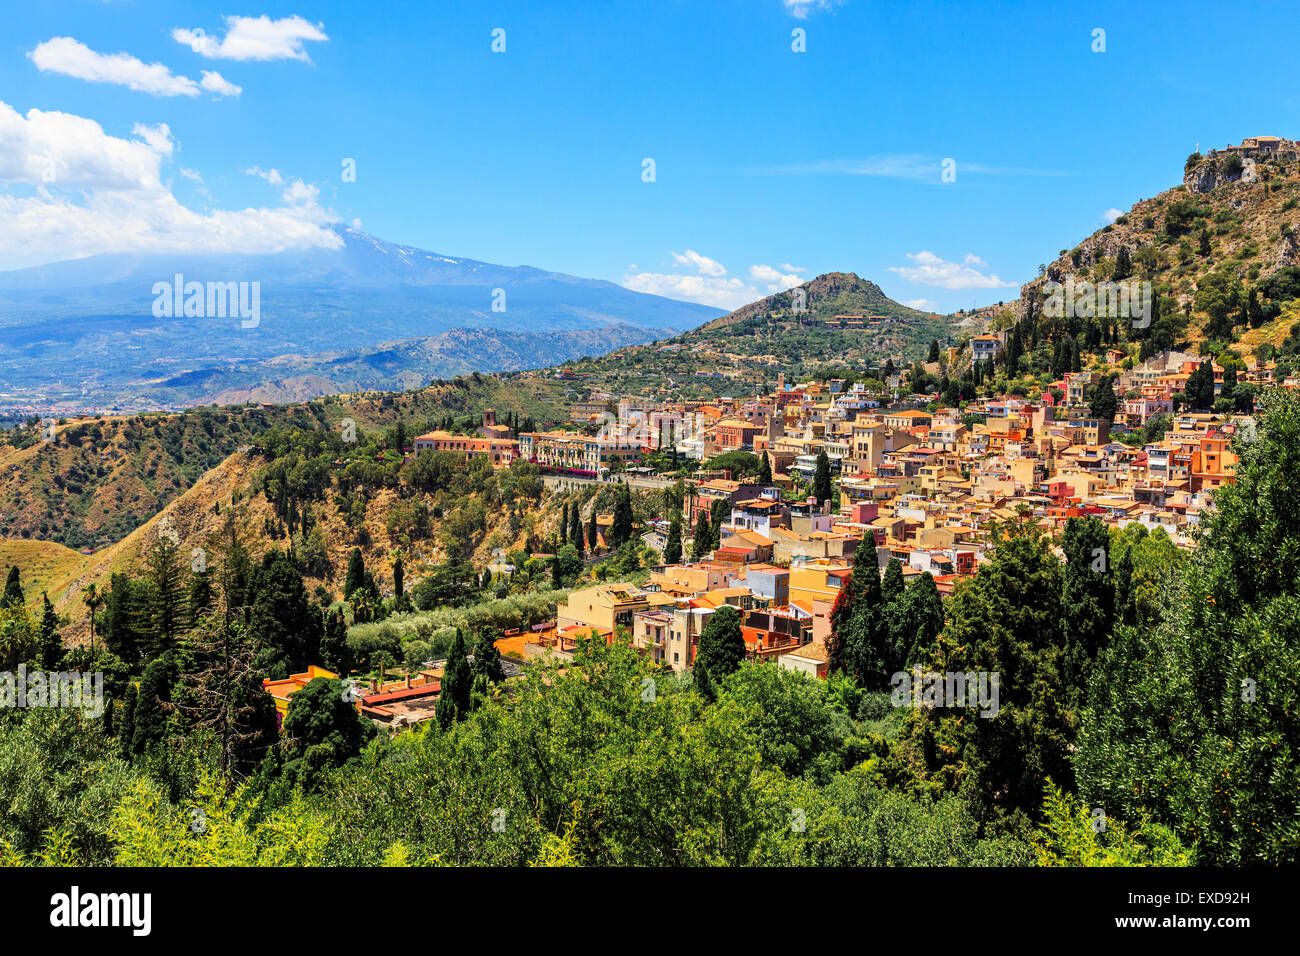 Village de Taormina et l'Etna, District de Messine, Sicile, Italie Banque D'Images